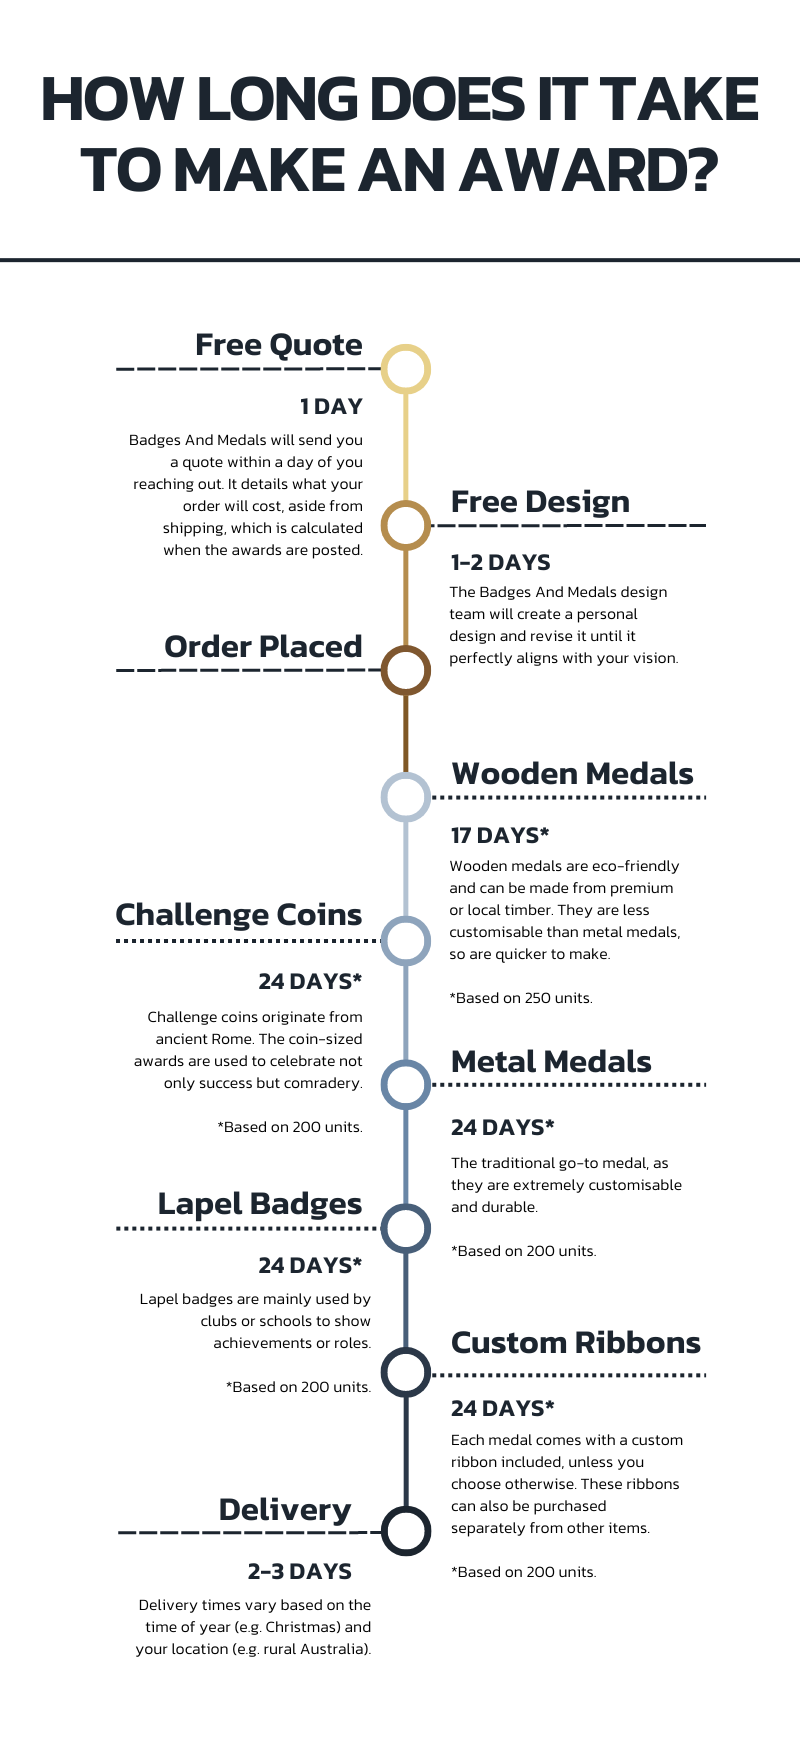 Badges And Medals Order Timeline